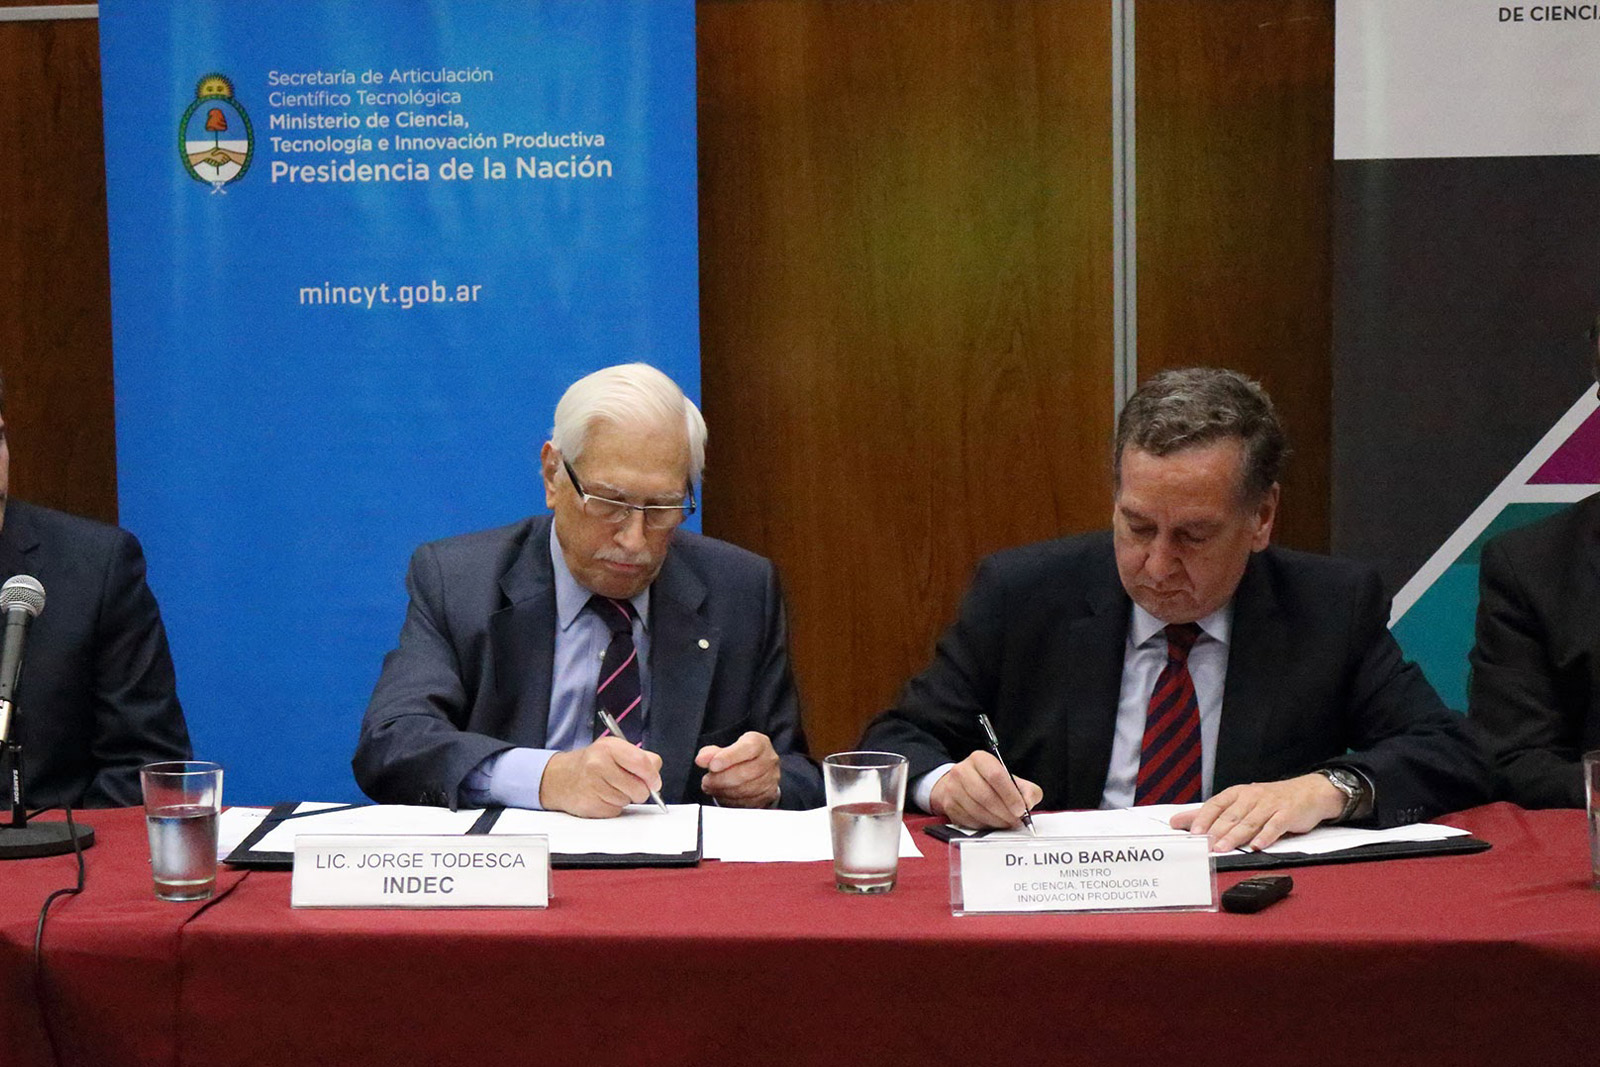 10/08/17. El INDEC firmó un convenio de cooperación con el Ministerio de Ciencia y Tecnología.